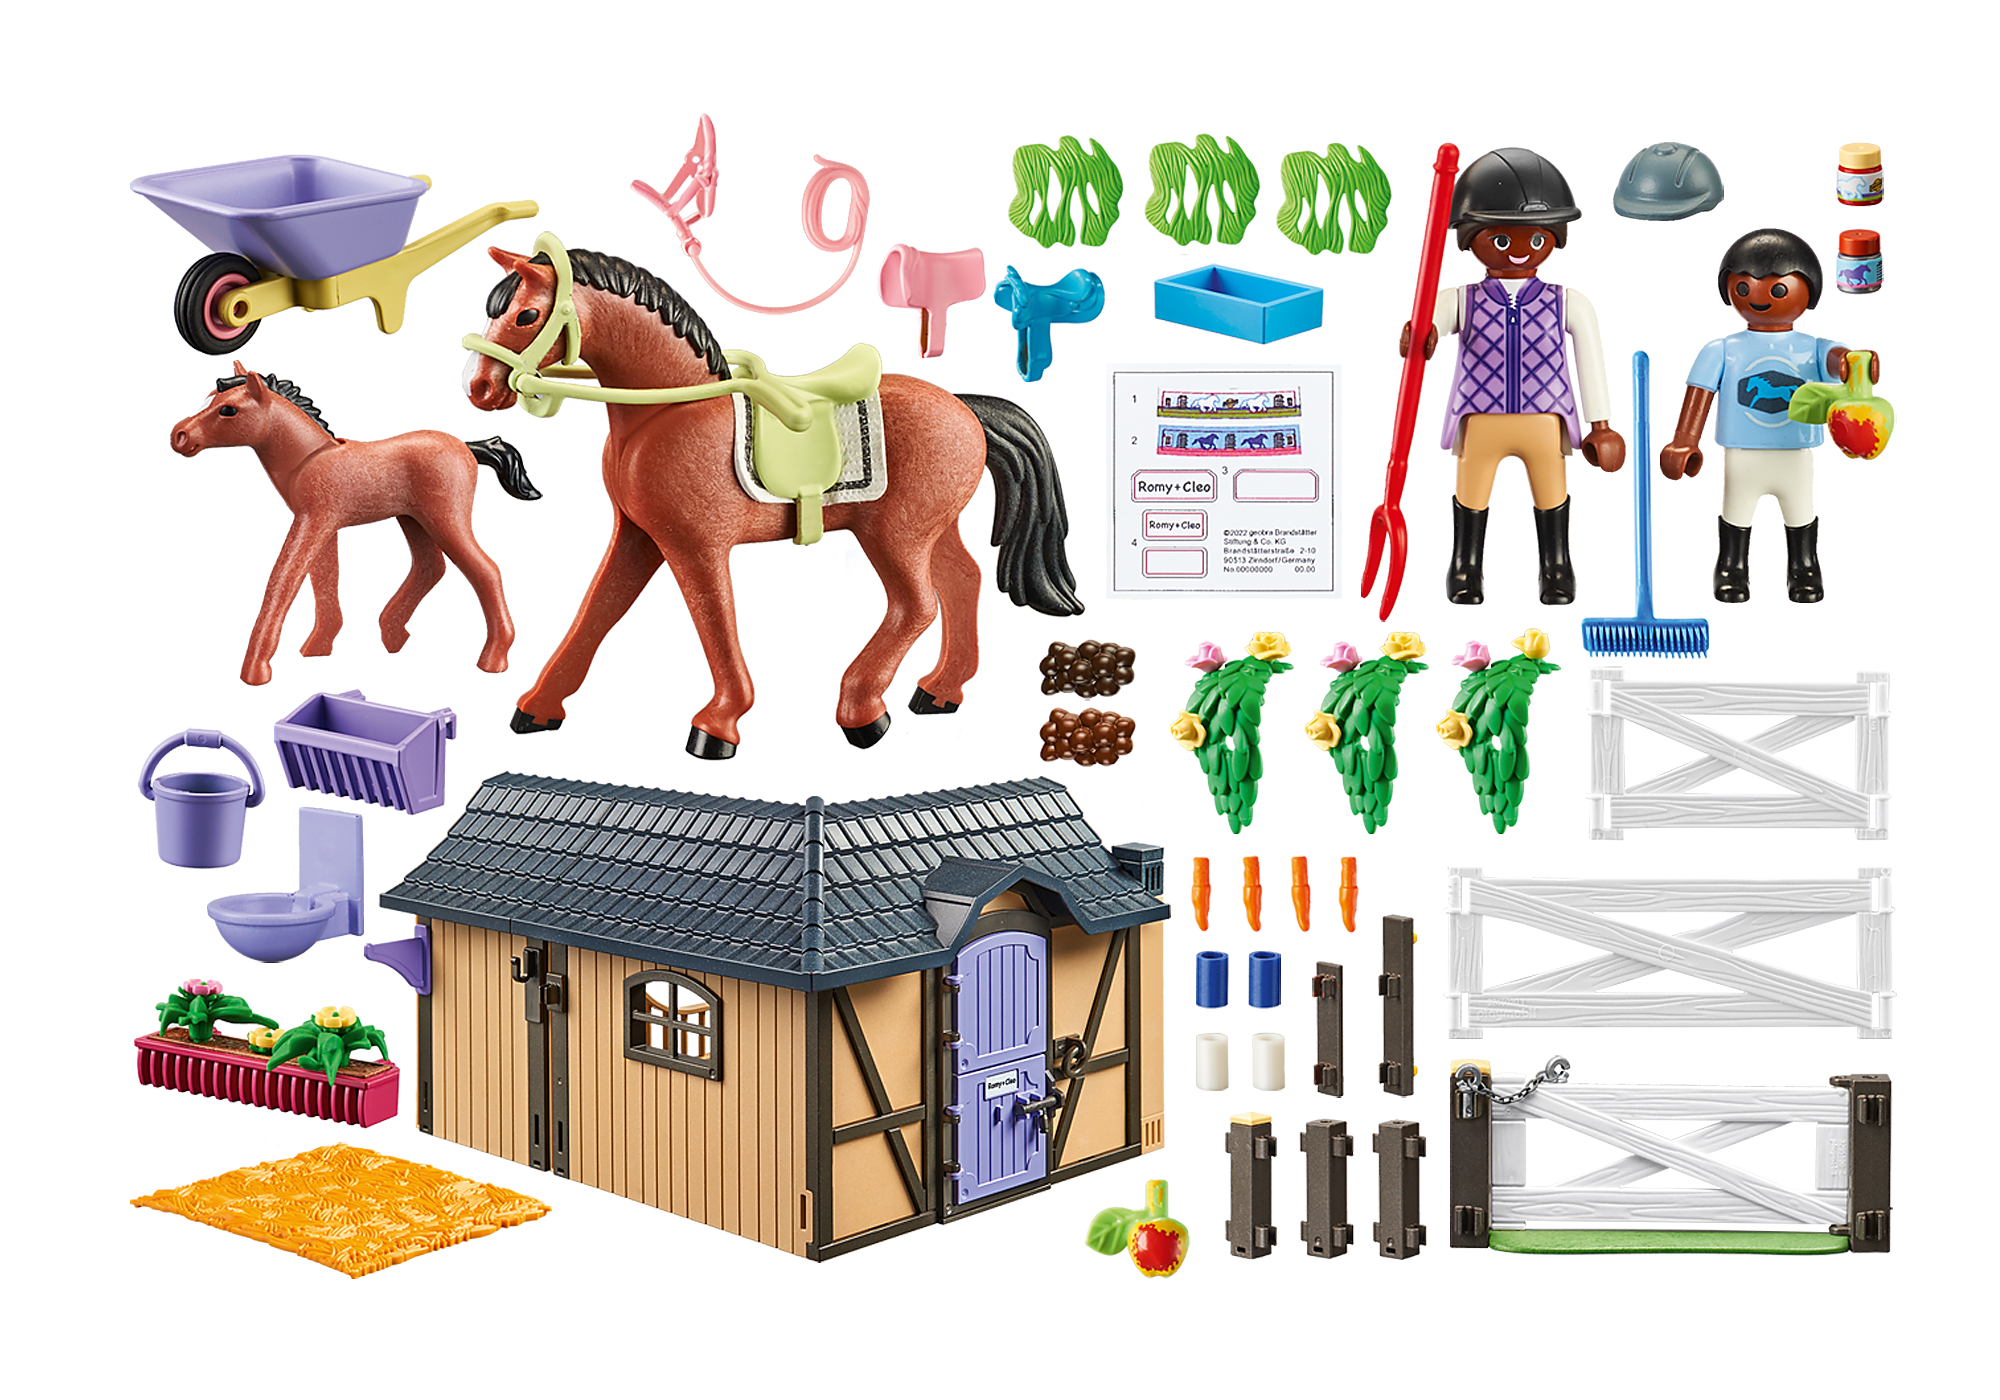 Playmobil establo de caballos (71238) – MANCHATOYS